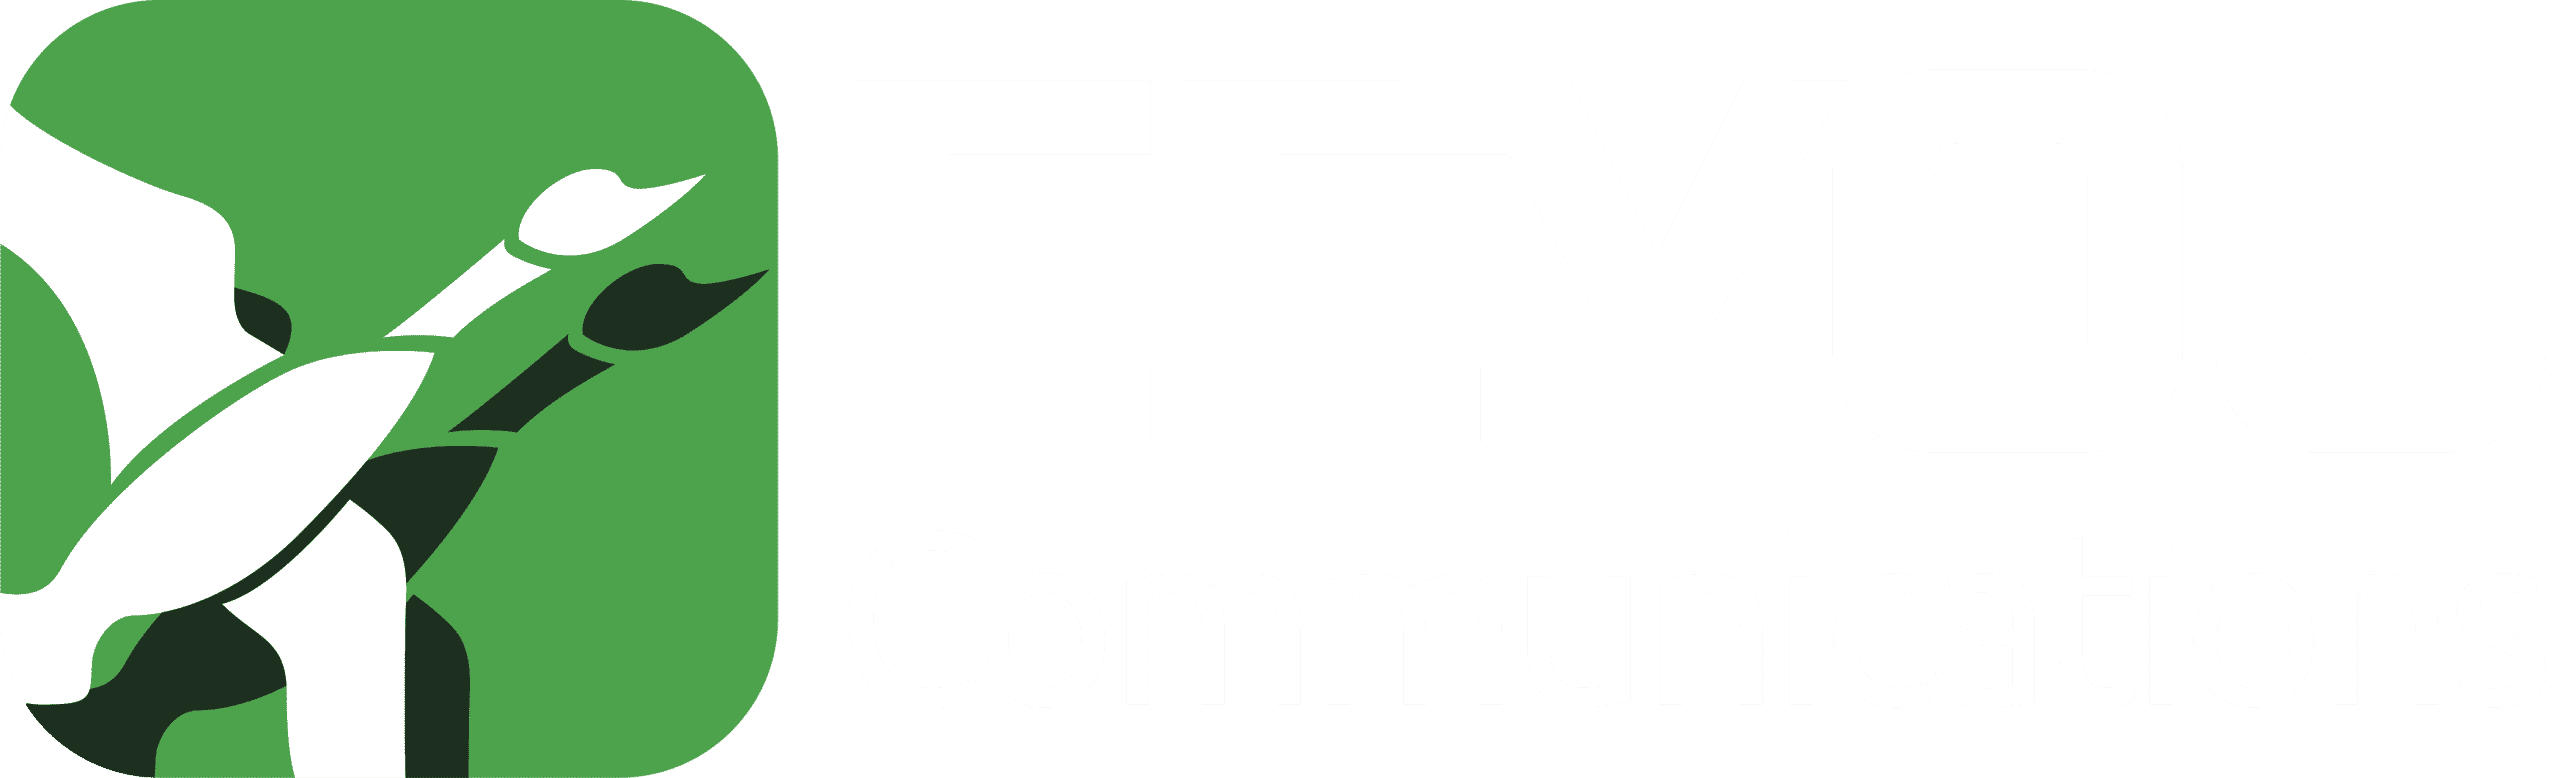 Eeyou_Communications_logo-04